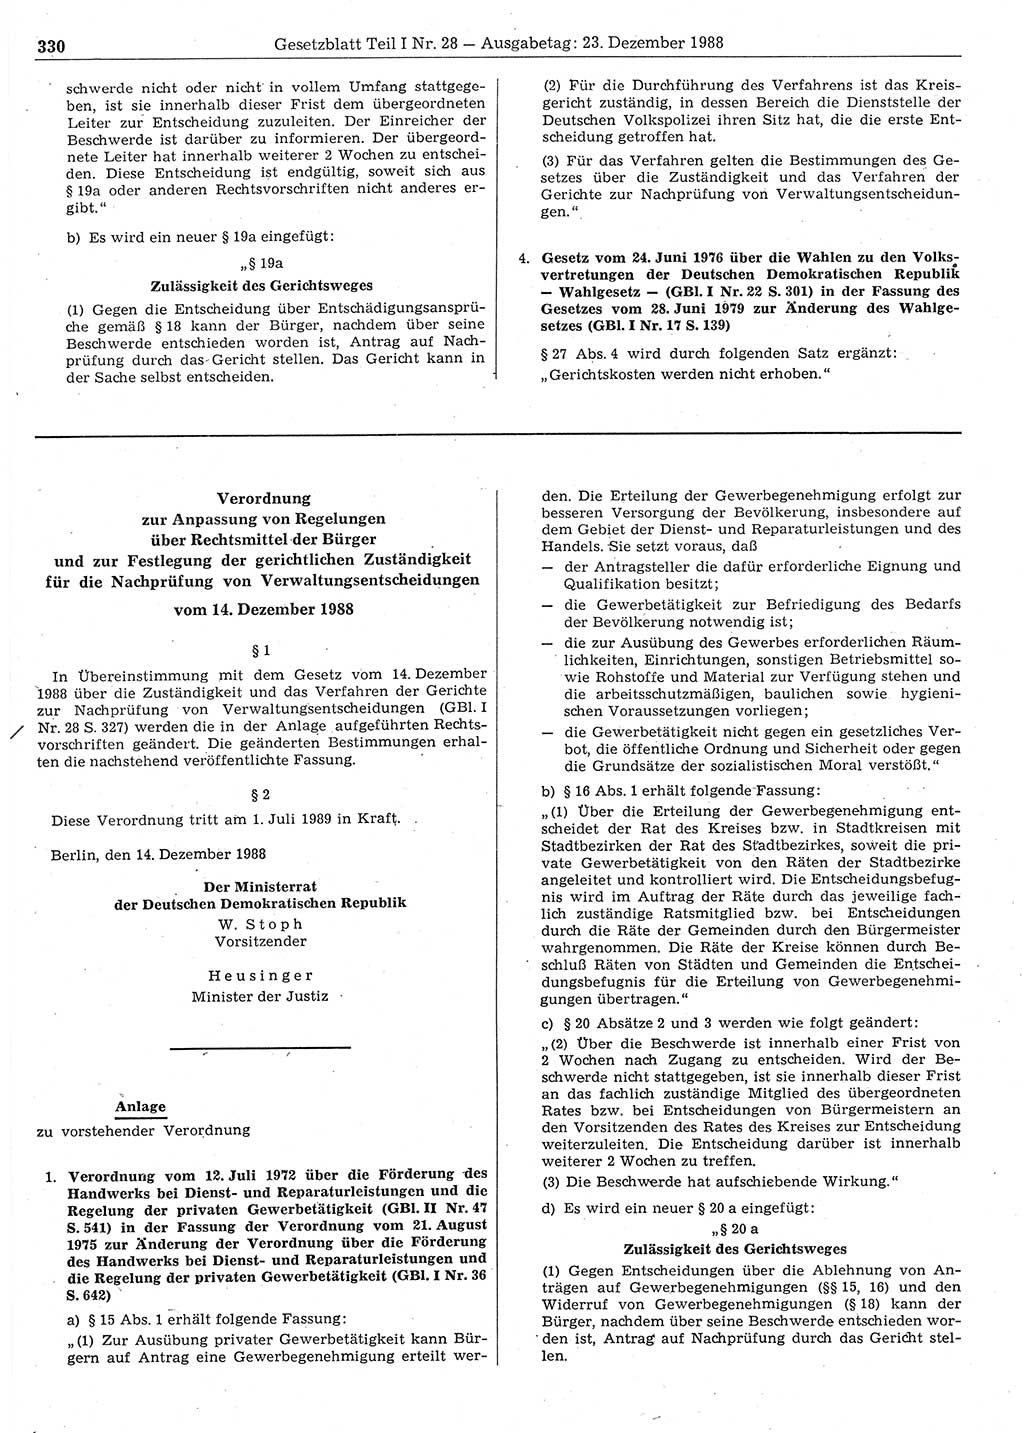 Gesetzblatt (GBl.) der Deutschen Demokratischen Republik (DDR) Teil Ⅰ 1988, Seite 330 (GBl. DDR Ⅰ 1988, S. 330)